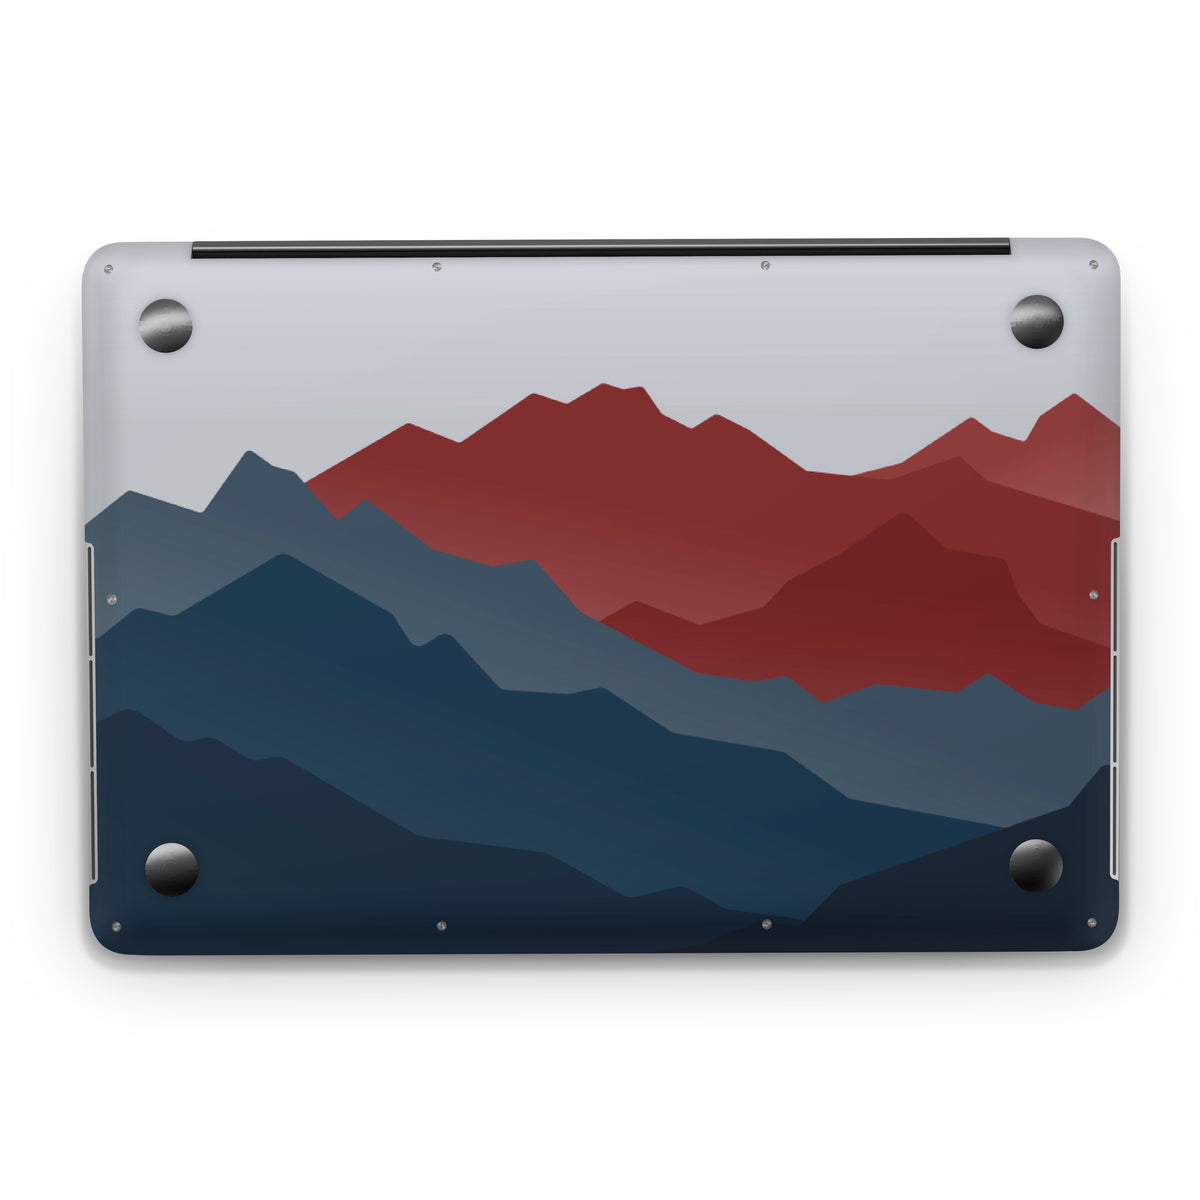 Rockies (MacBook Skin)